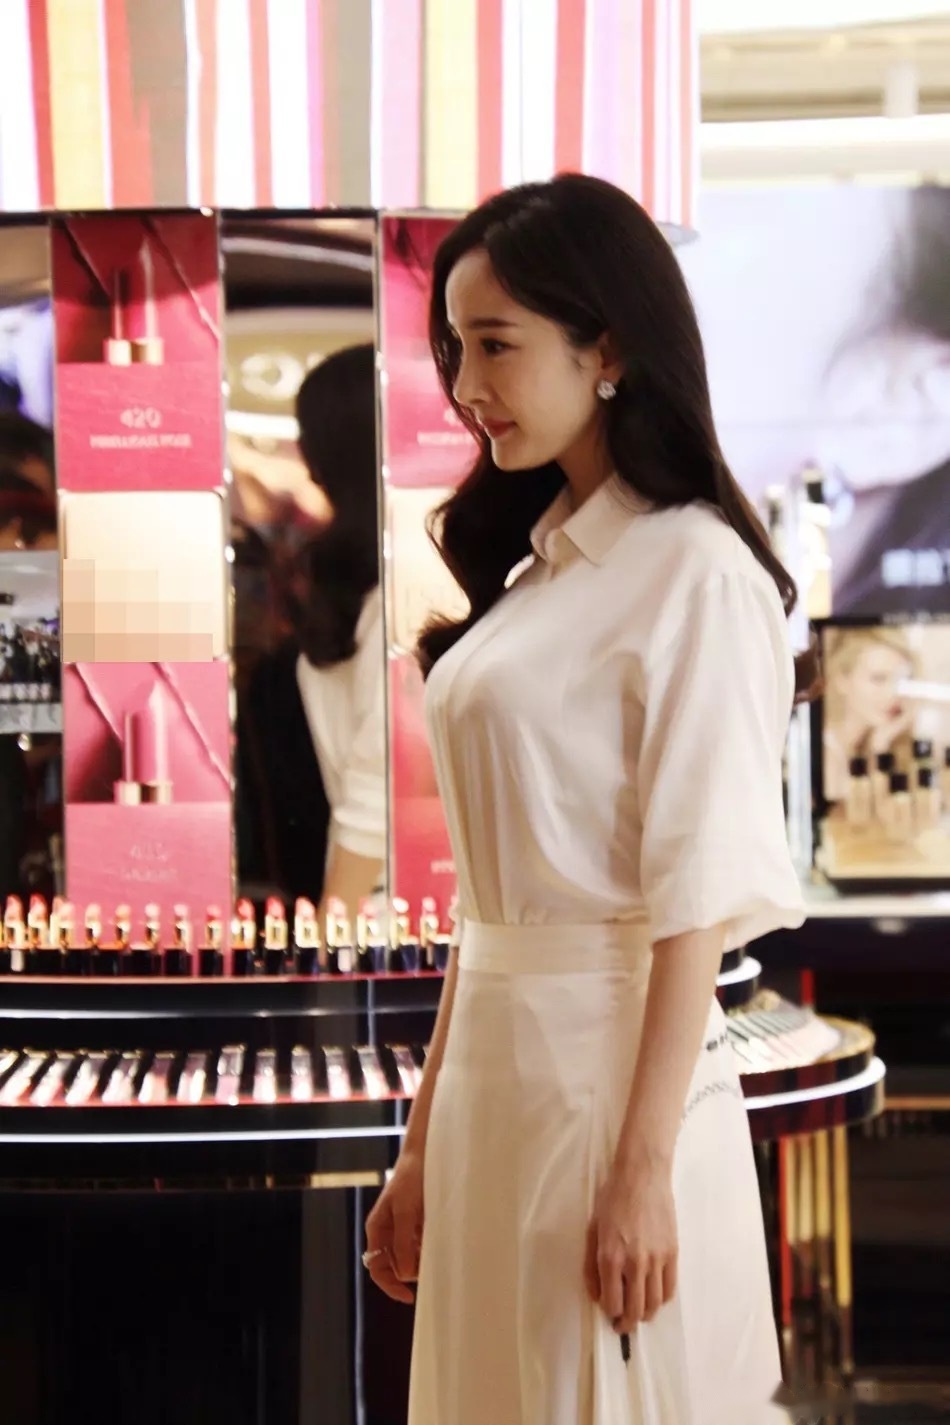 7日,杨幂在南京出席品牌活动,她身穿白衬衫搭配白色长裙,大波浪卷发